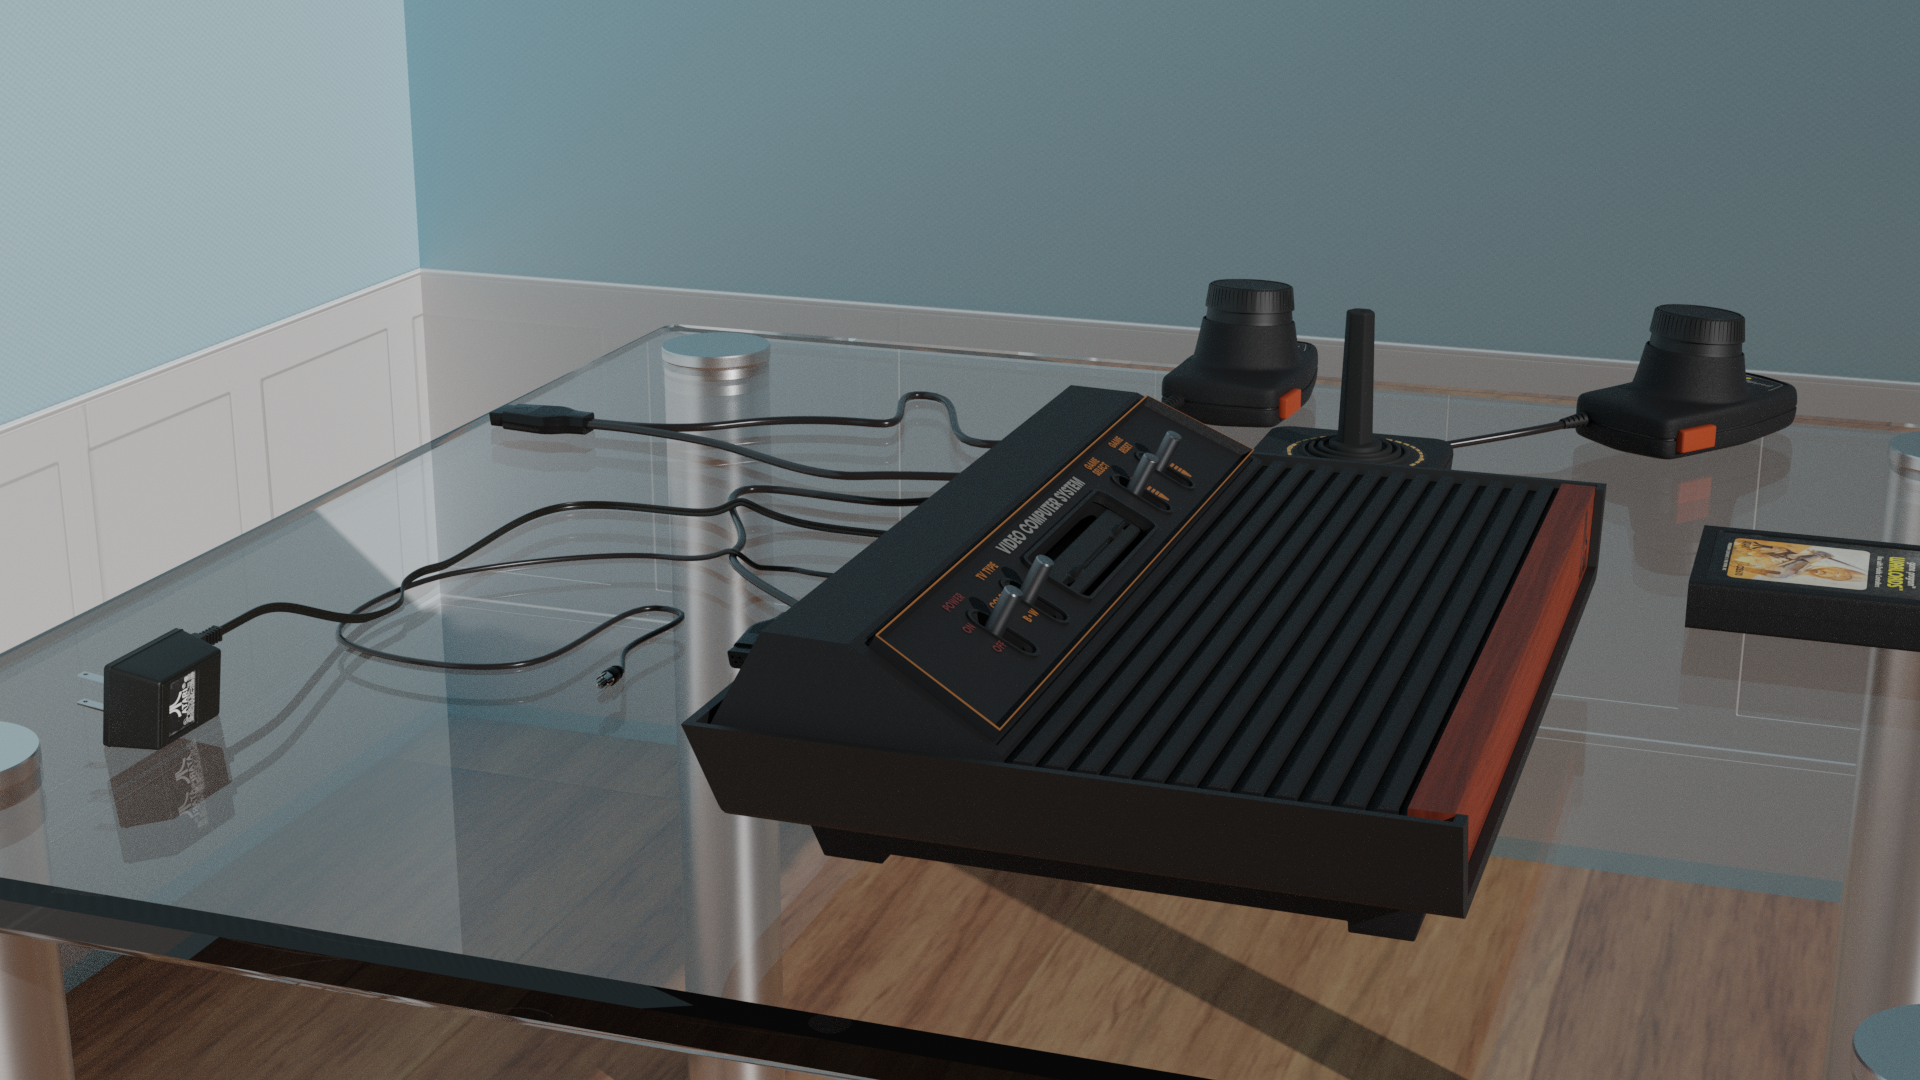 Atari 2600 preview image 4